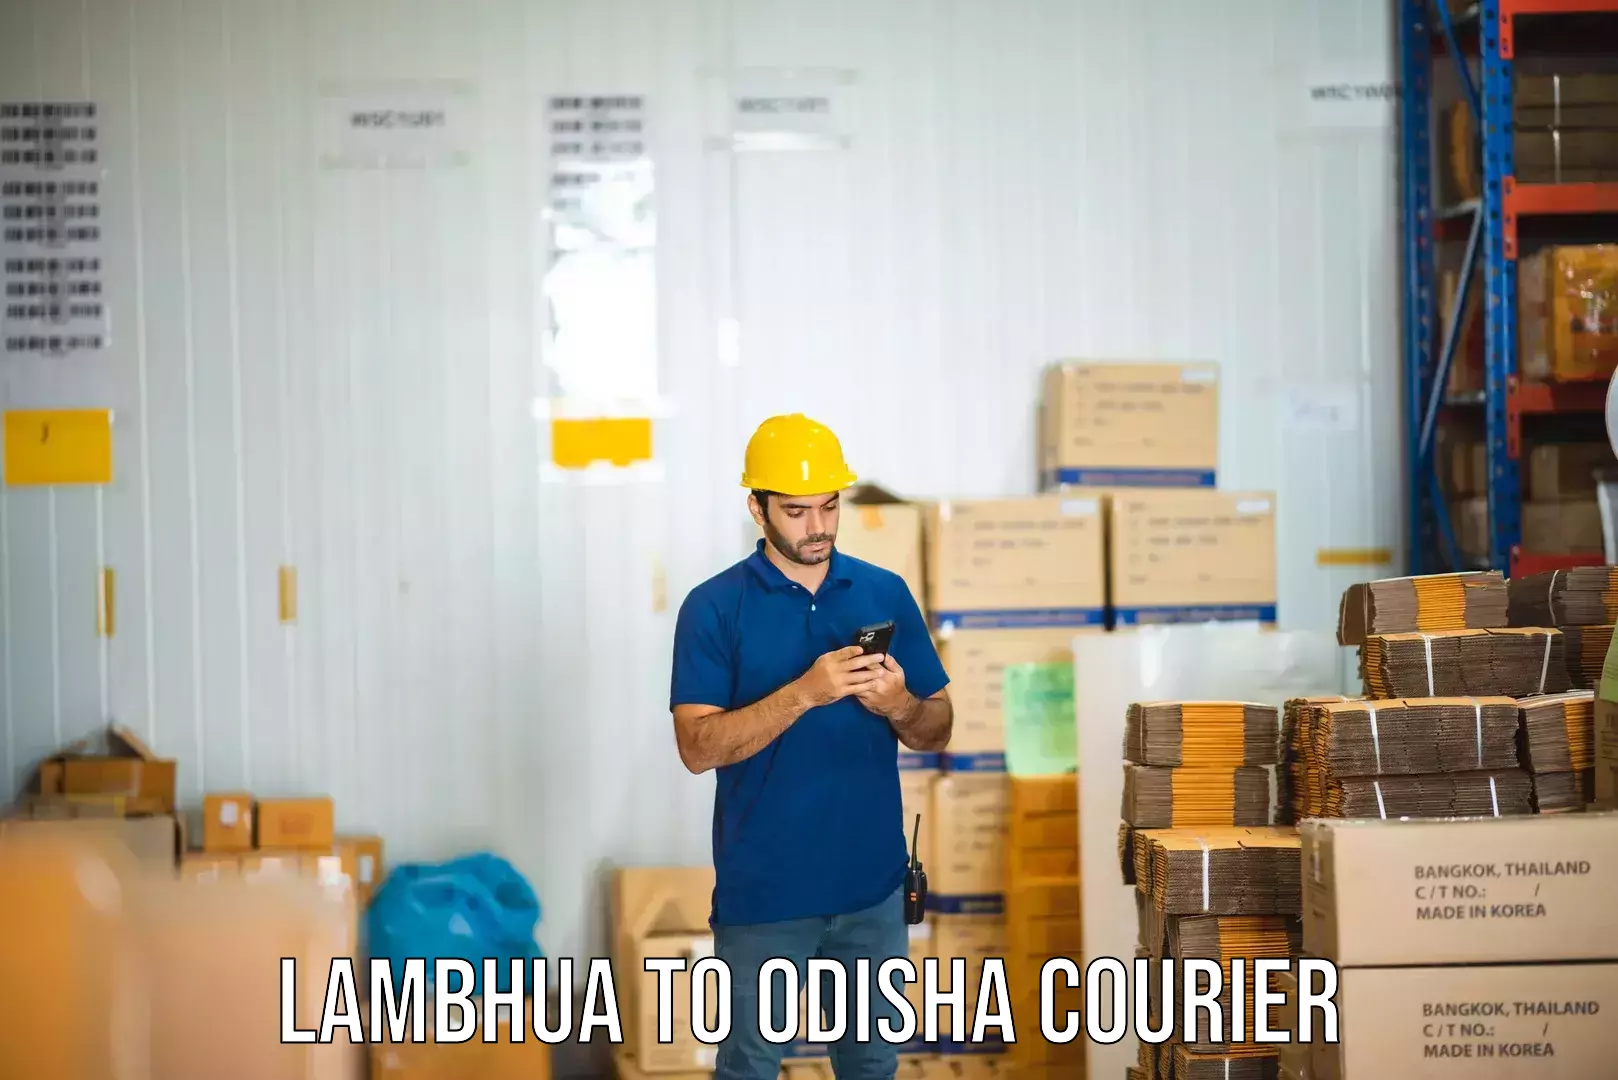 Professional courier handling in Lambhua to Dhamara